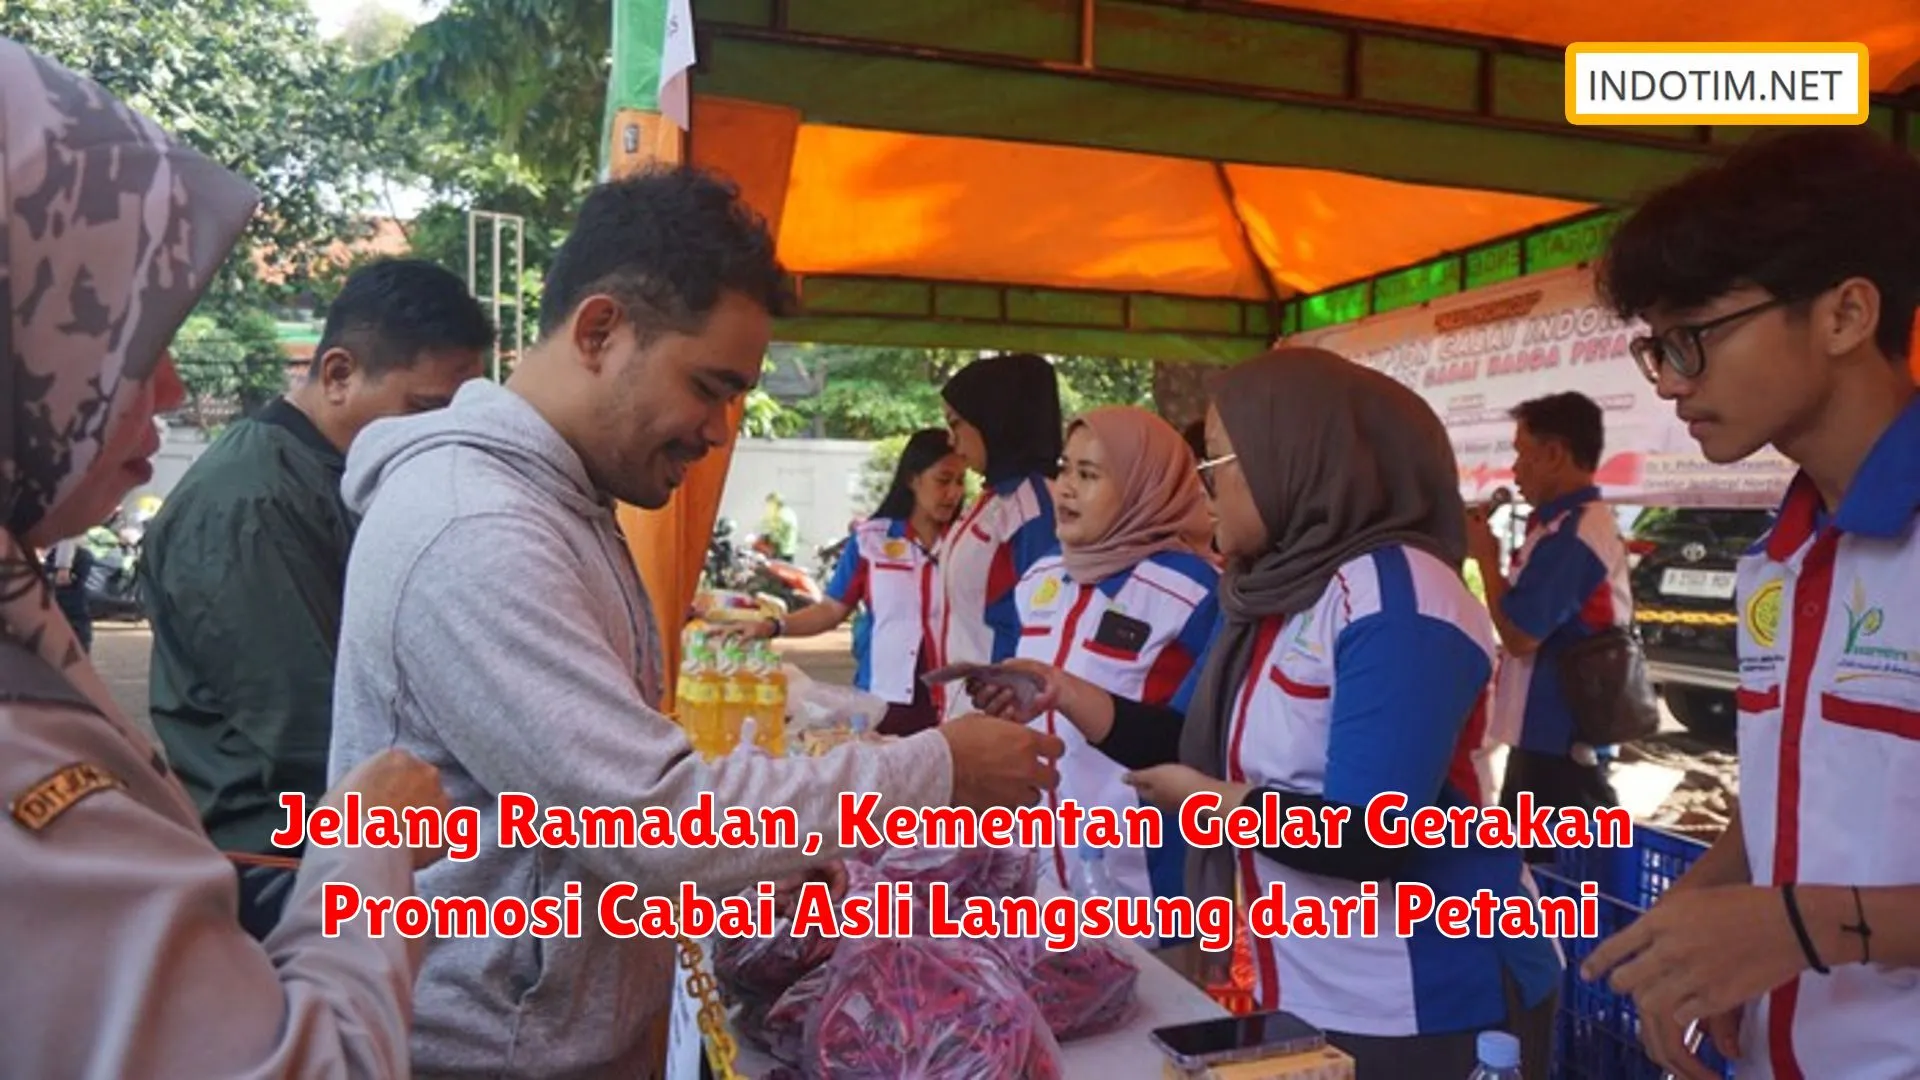 Jelang Ramadan, Kementan Gelar Gerakan Promosi Cabai Asli Langsung dari Petani